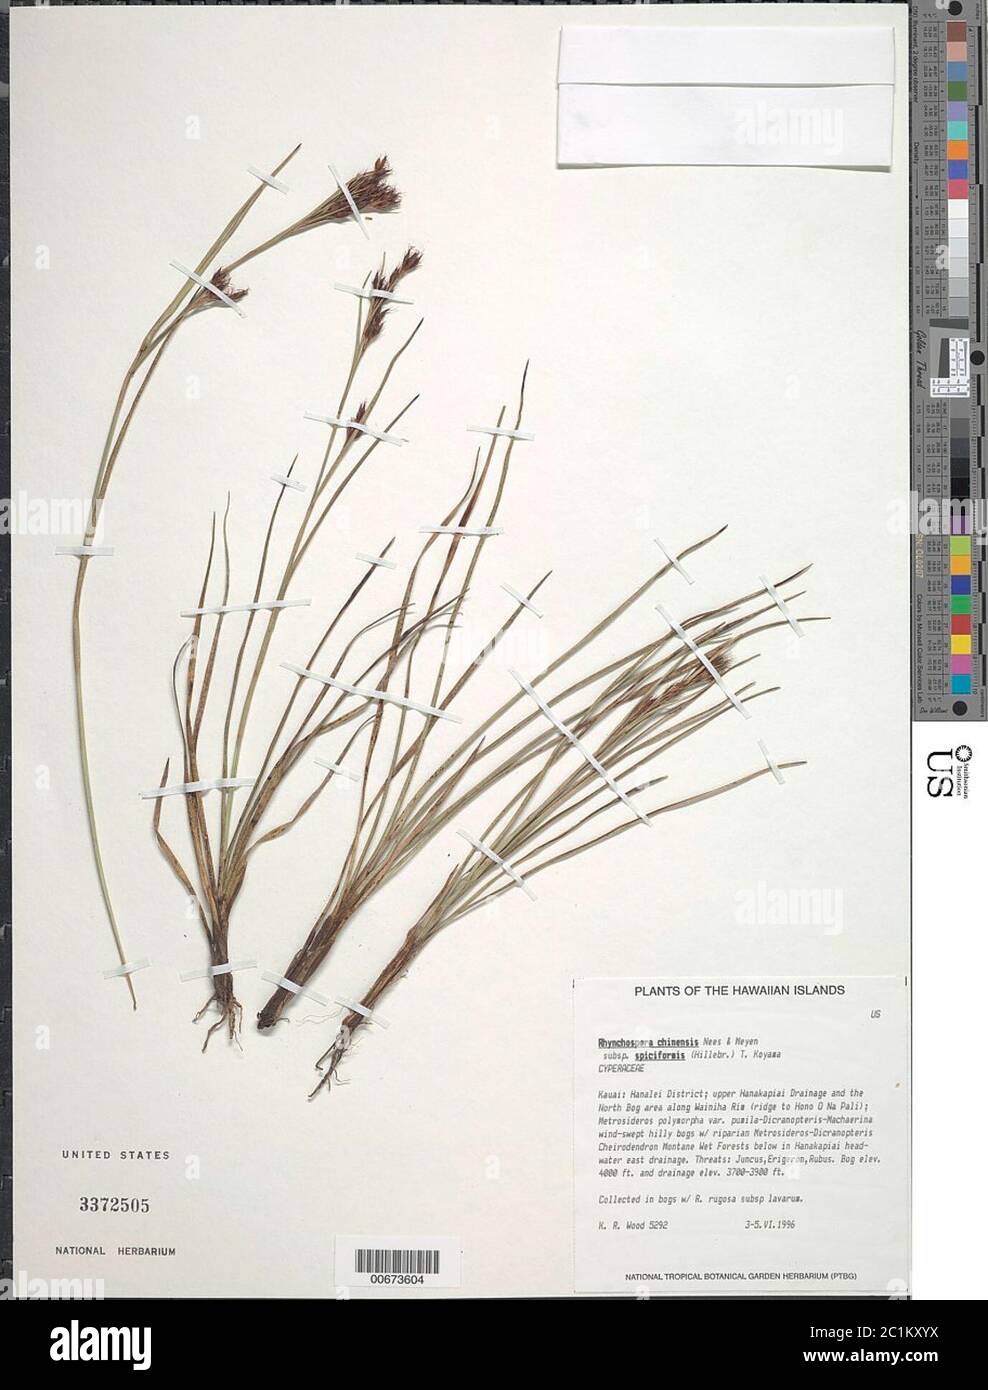 Rhynchospora chinensis subsp spiciformis Hillebr T Koyama Rhynchospora chinensis subsp spiciformis Hillebr T Koyama. Stock Photo